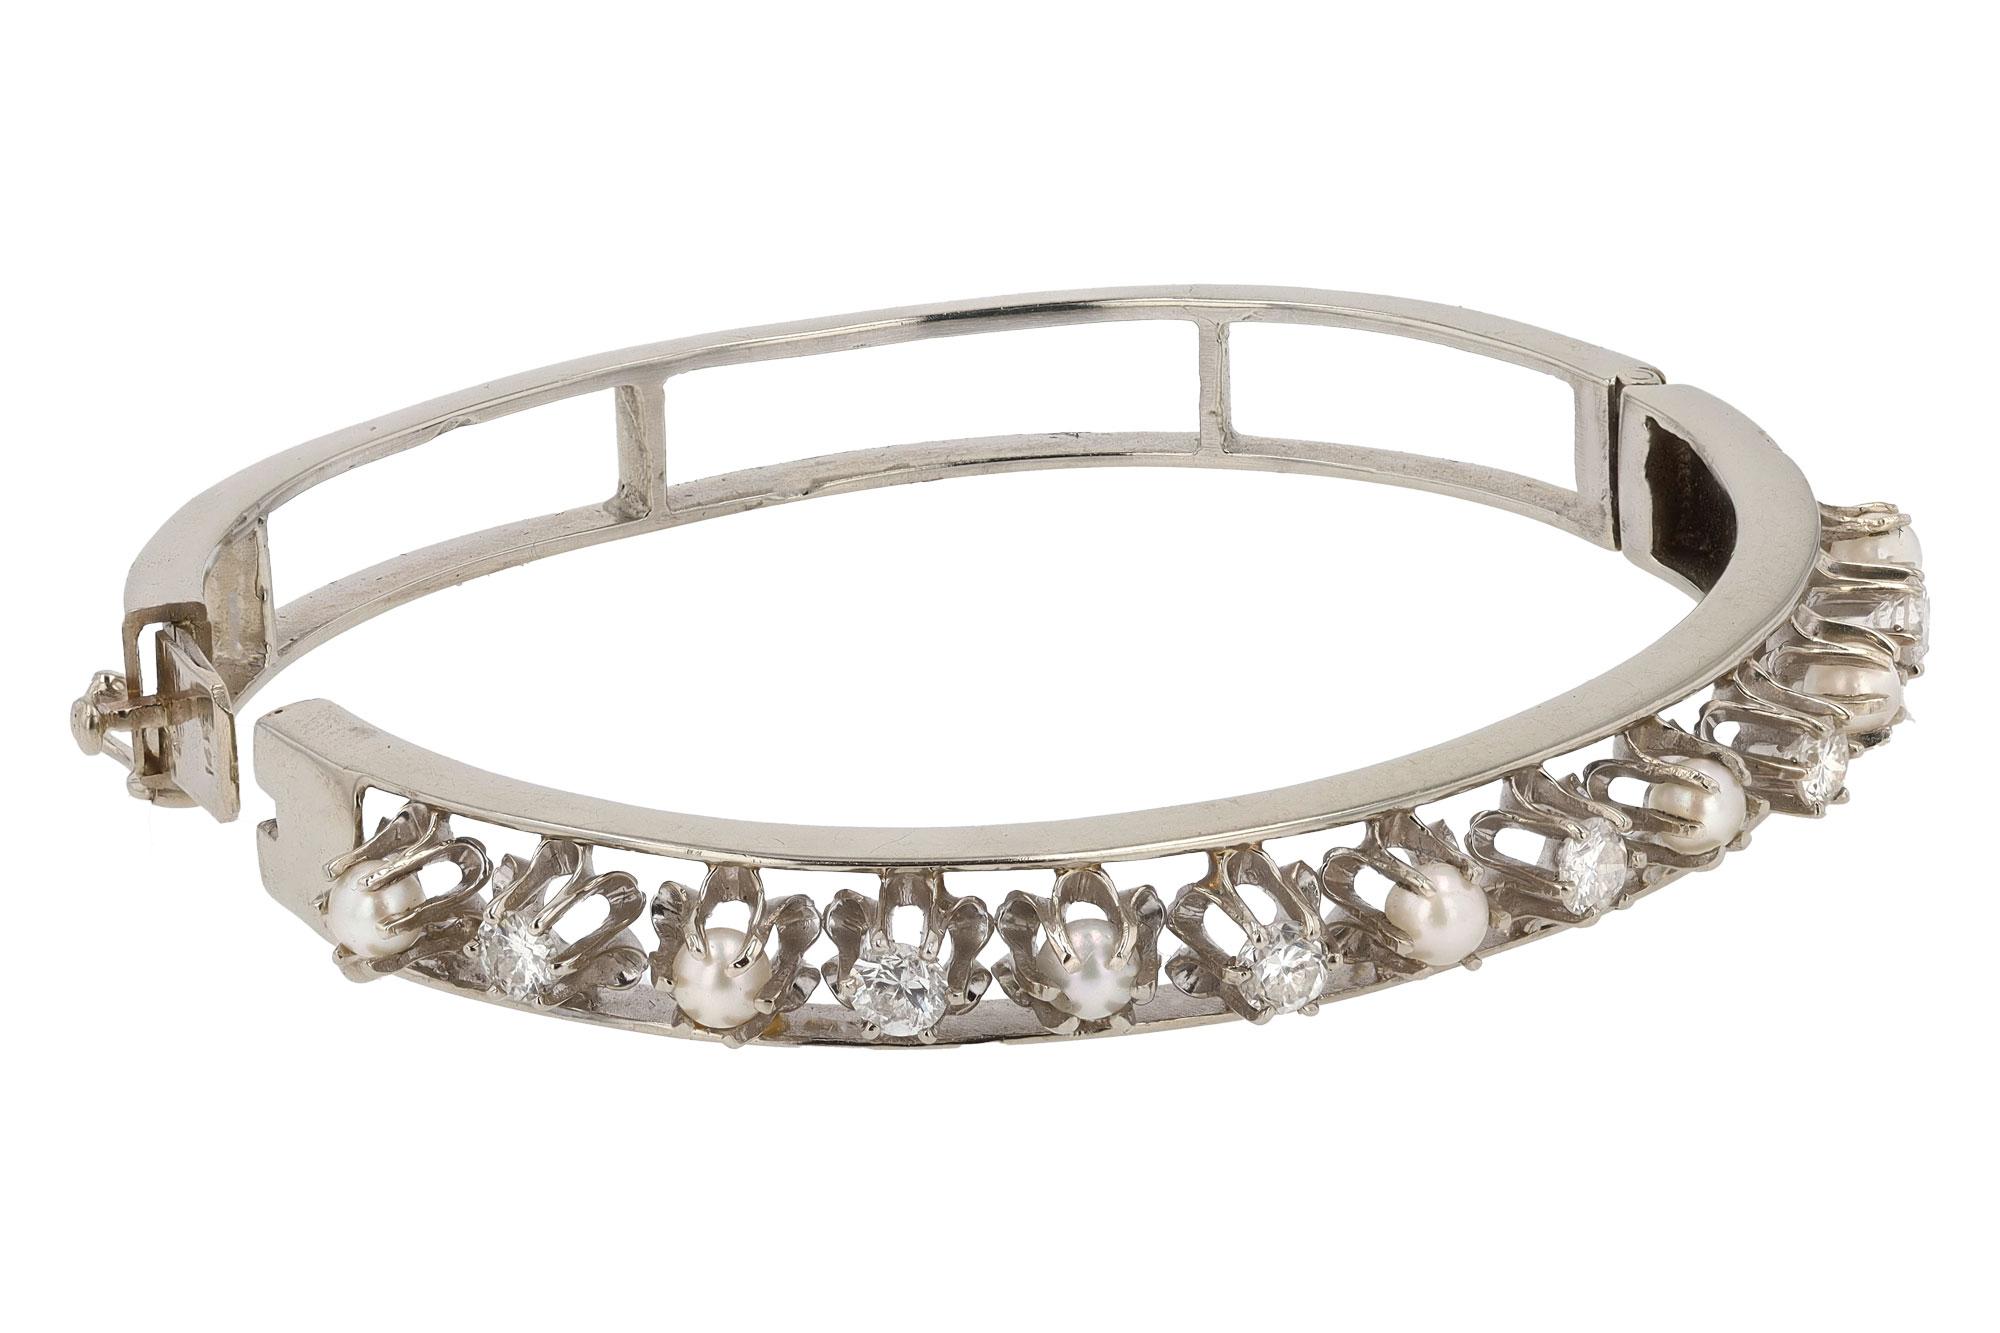  Antique Art Deco Diamond & Pearl Buttercup Bangle Bracelet In Good Condition For Sale In Santa Barbara, CA